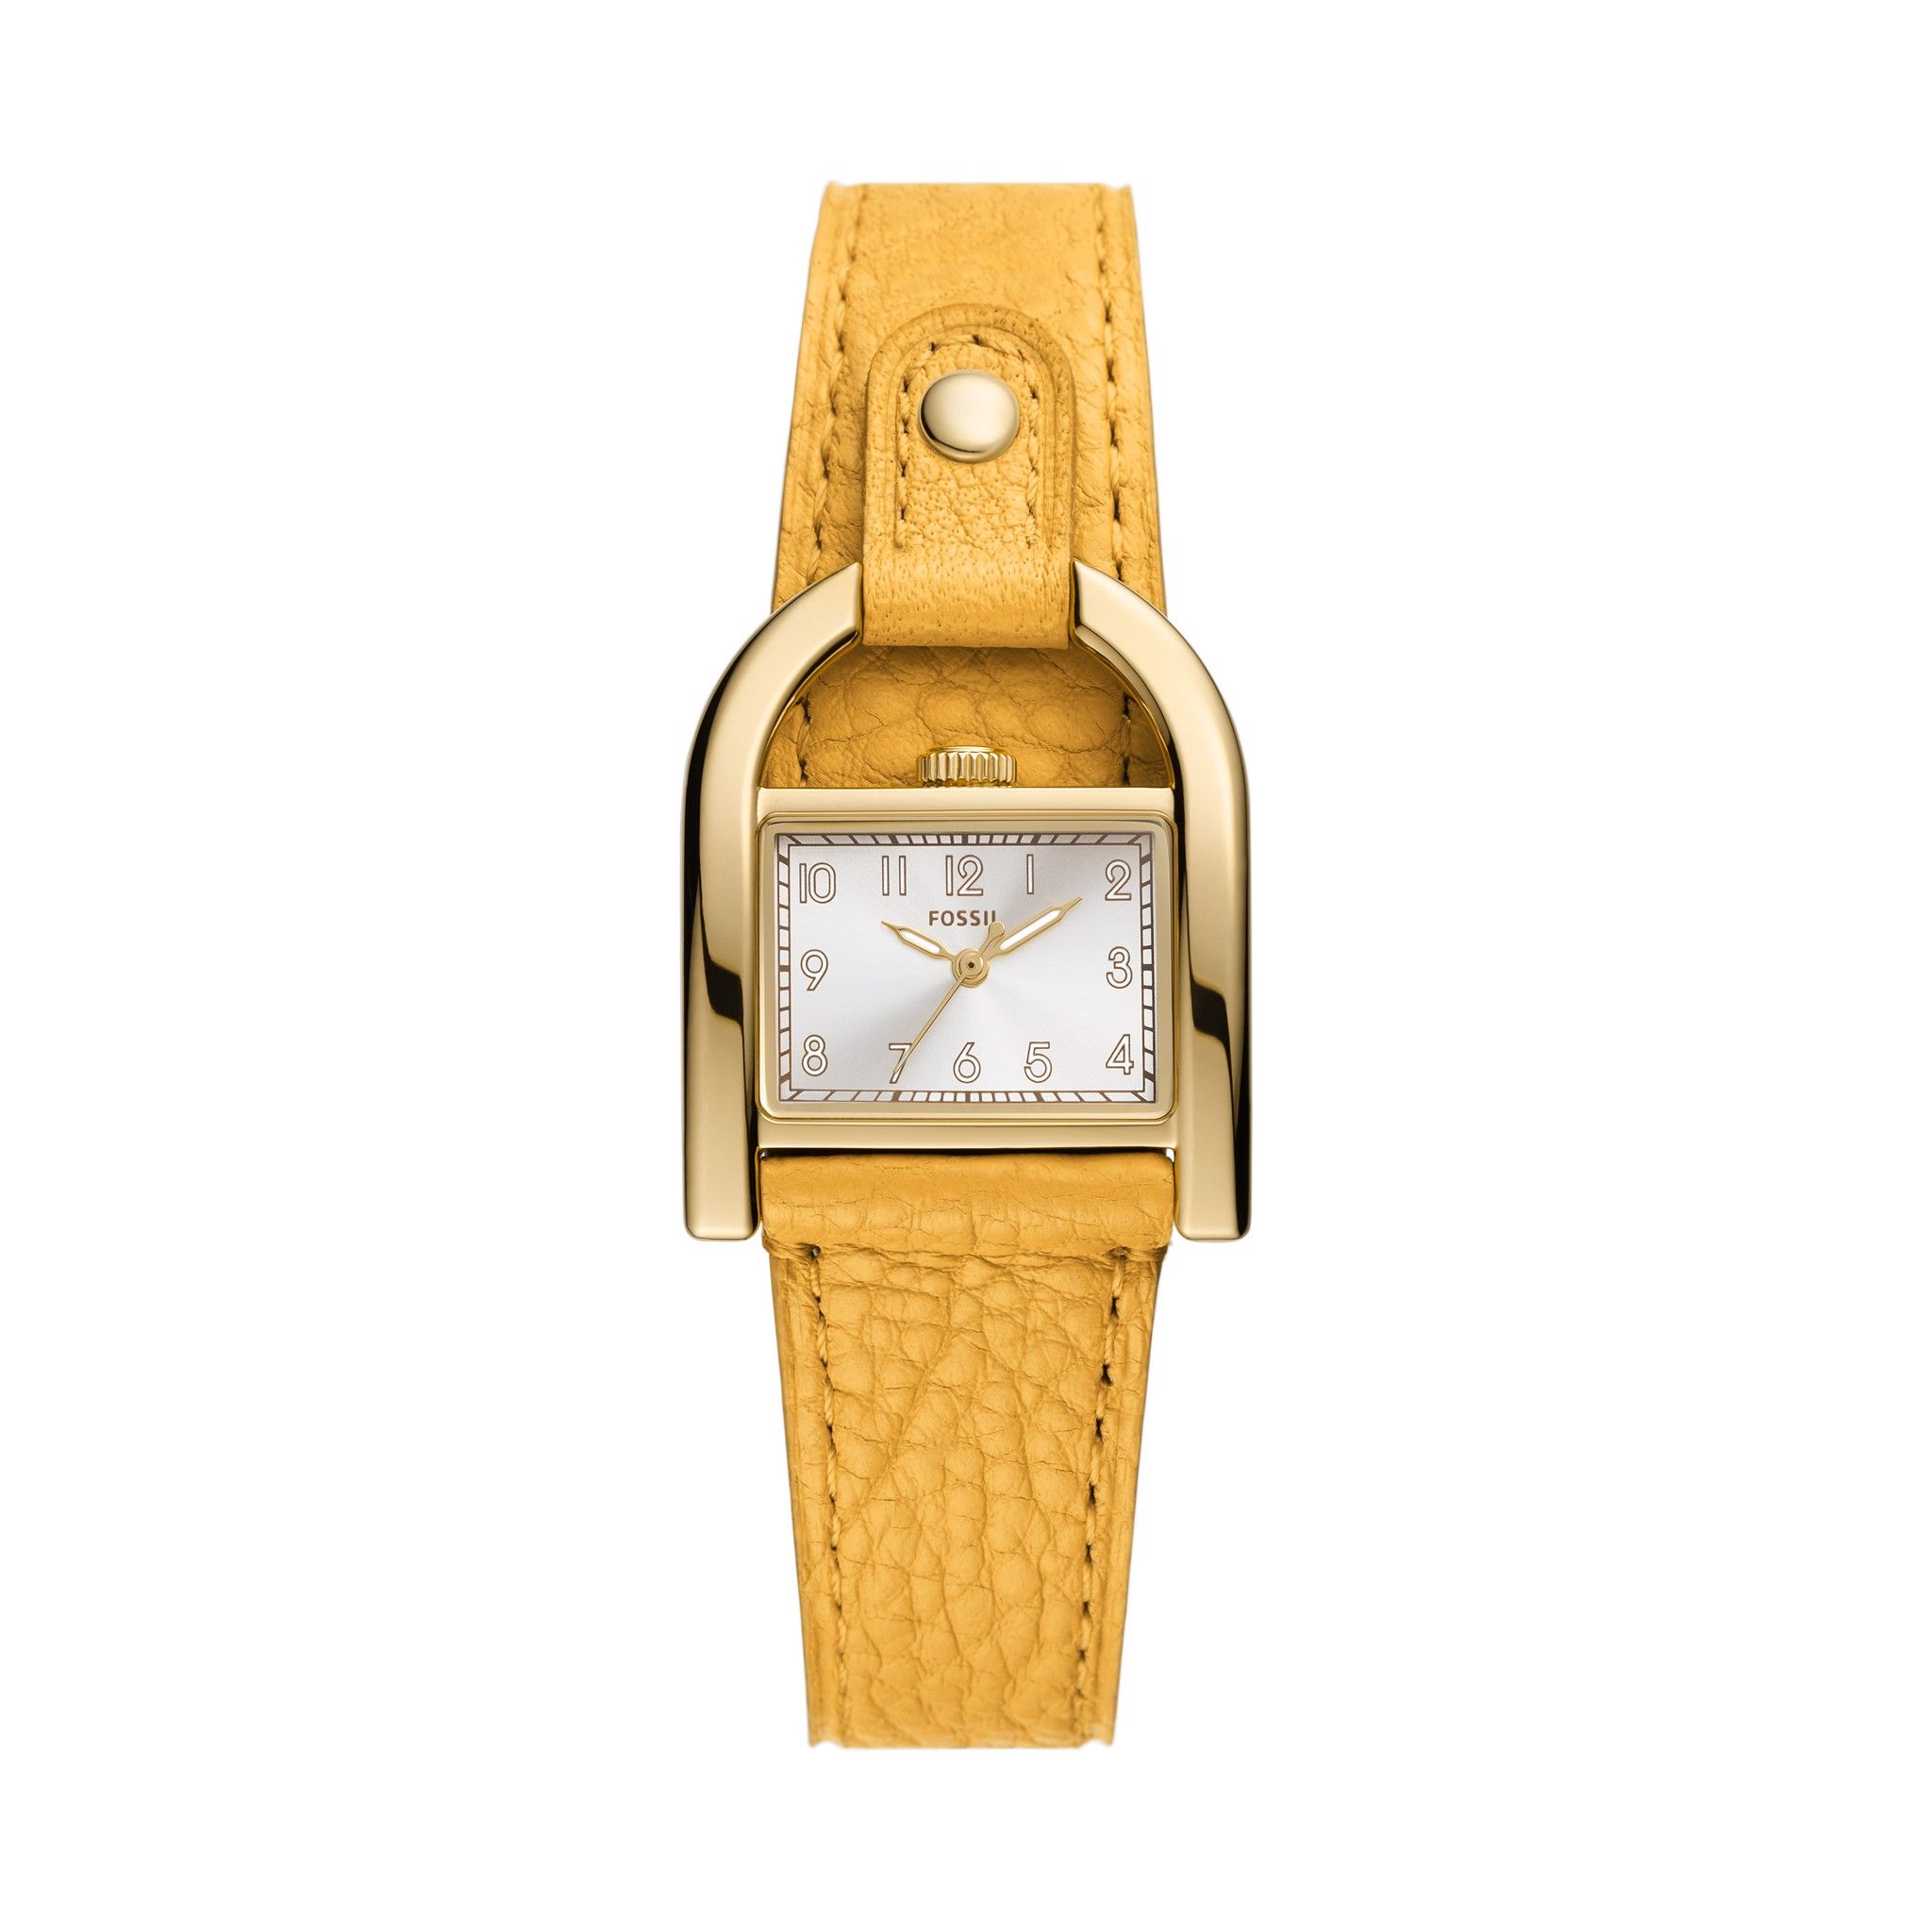  Đồng hồ nữ Fossil Hardwell dây da ES5281 - màu vàng 